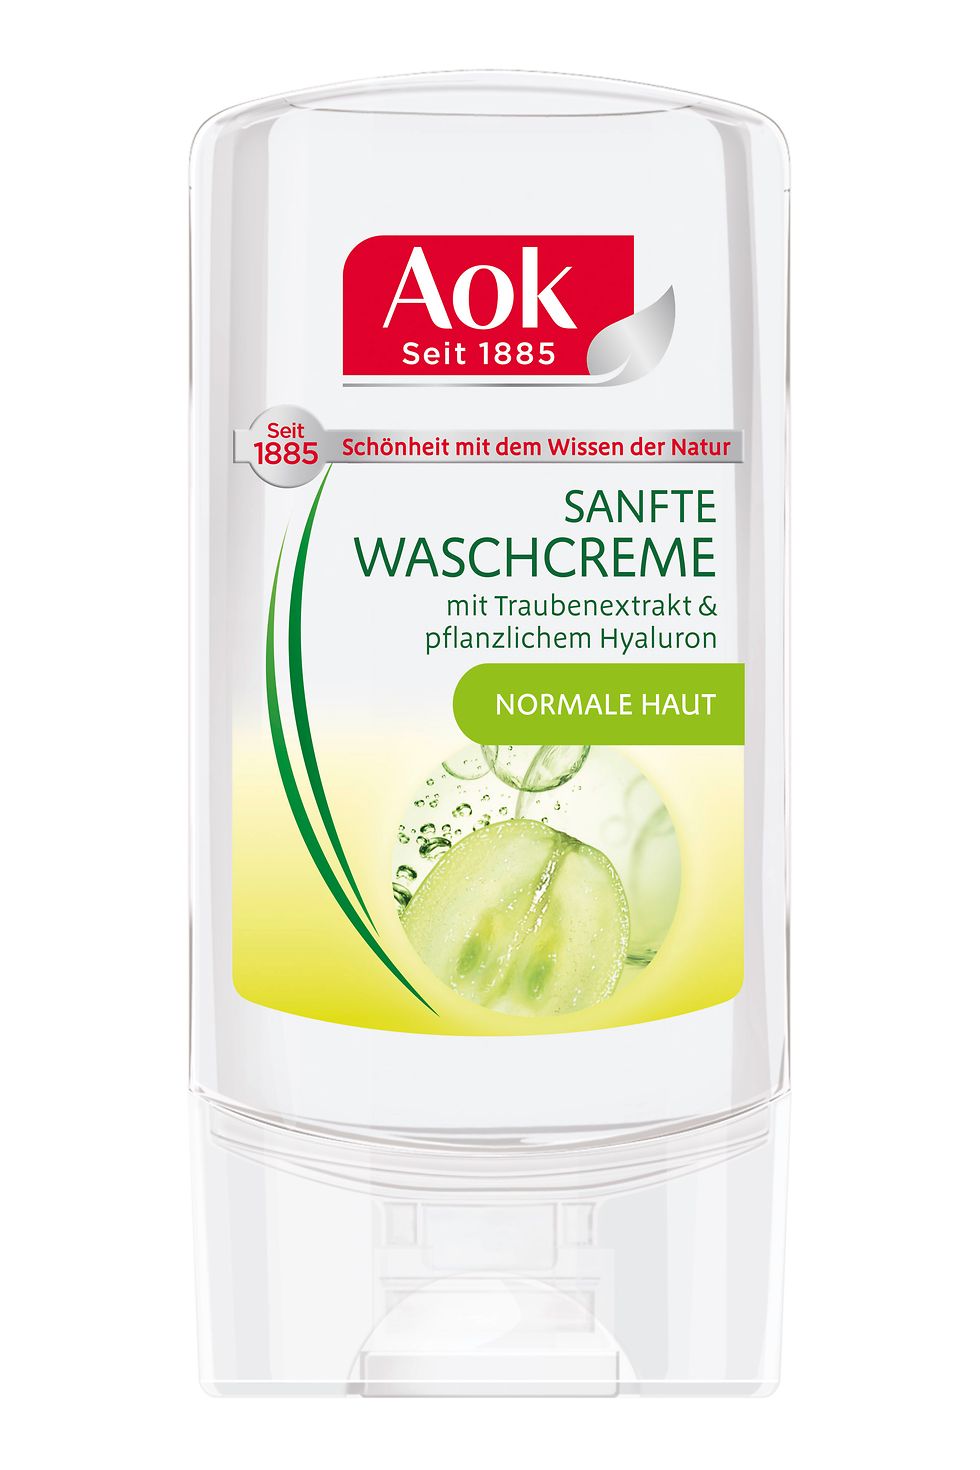 Aok Sanfte Waschcreme mit Traubenextrakt & pflanzlichem Hyaluron